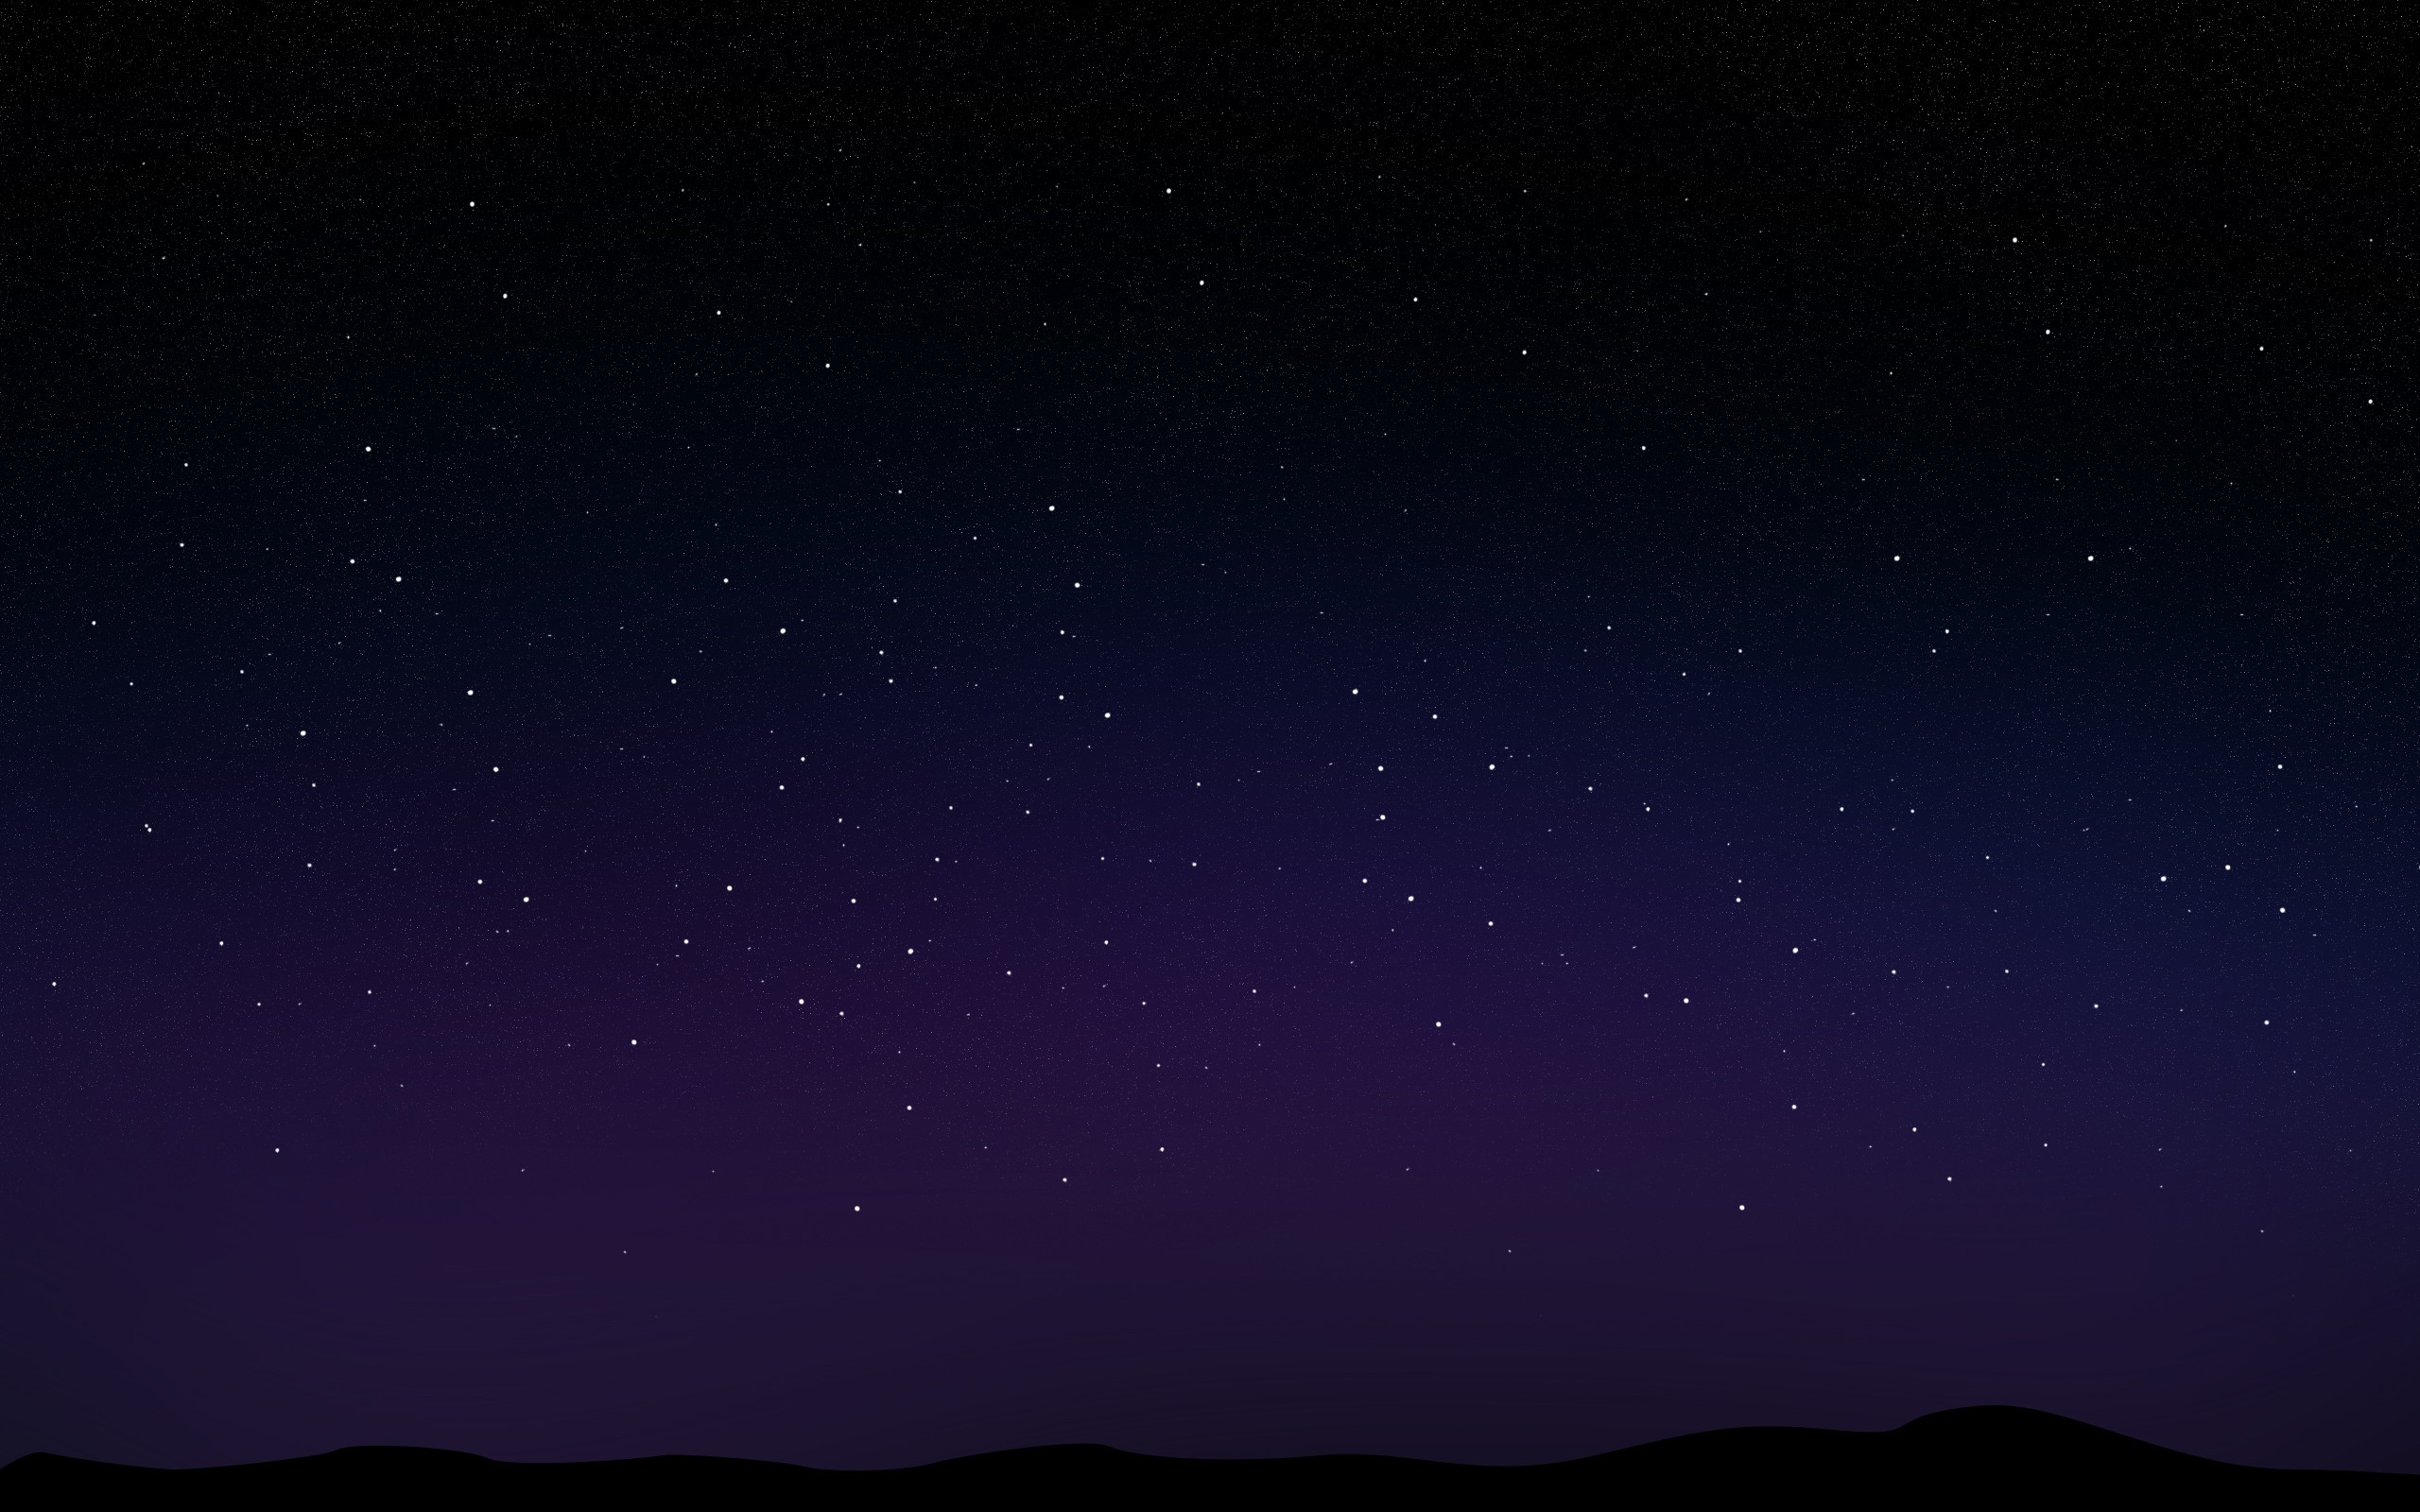 Trang trí máy tính của bạn với hình ảnh bầu trời đêm đầy sao tuyệt đẹp từ hình nền này! Với những ngôi sao lấp lánh và không gian đầy mê hoặc, bạn sẽ có những giây phút thư giãn tuyệt vời ngay trên màn hình của mình.